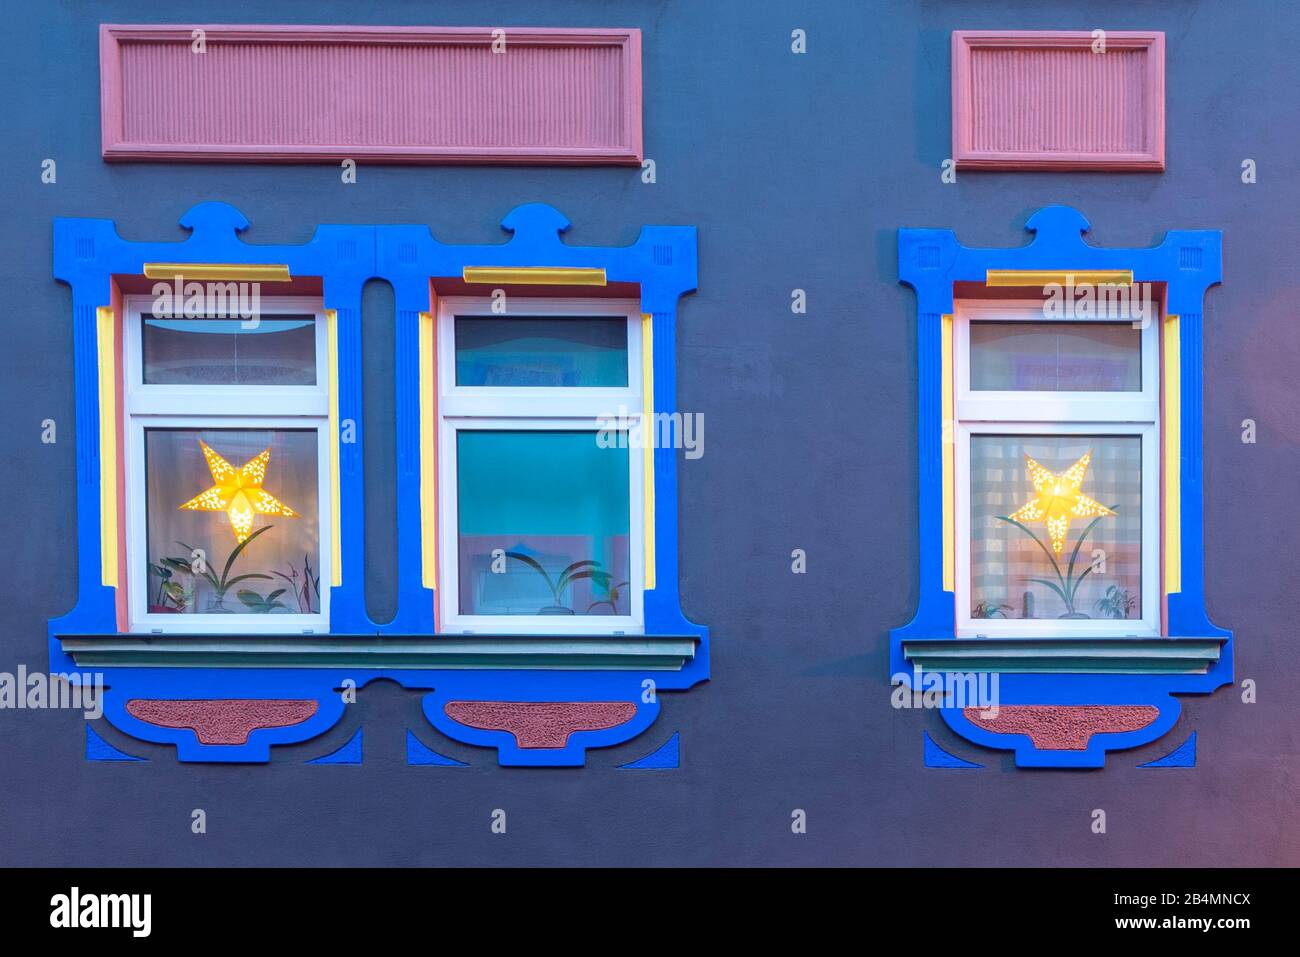 Deutschland, Sachsen-Anhalt, Magdeburg, Blick auf weihnachtlich geschmückte Fenster in der Otto-Richter-Straße im Stadtteil Sudenburg, die bunten Häus Banque D'Images